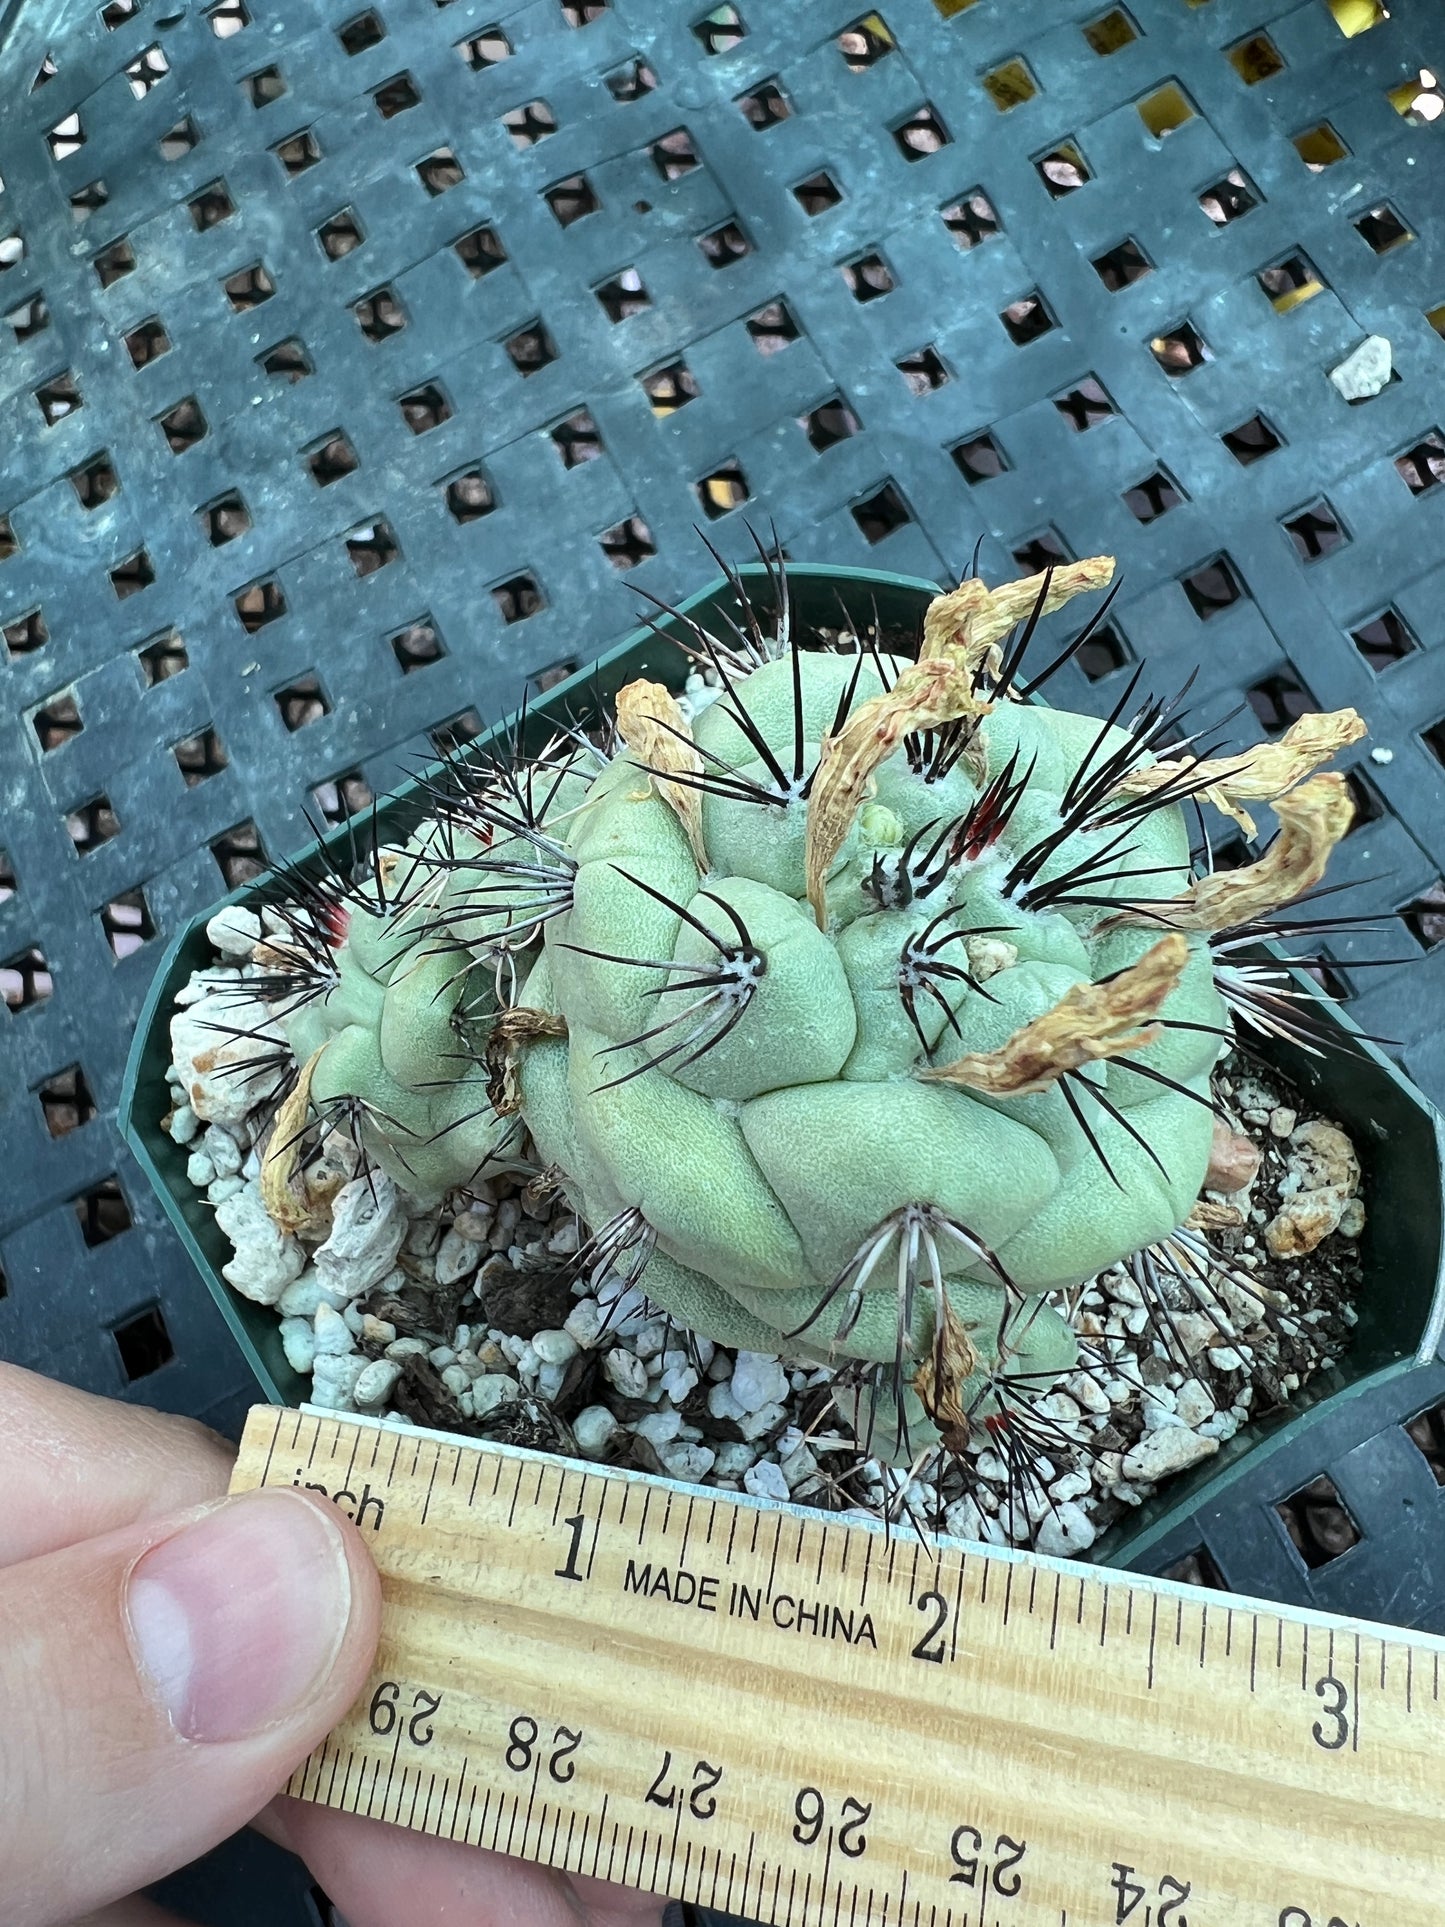 Ortegocactus macdougalii cactus in 3.25 inch pot